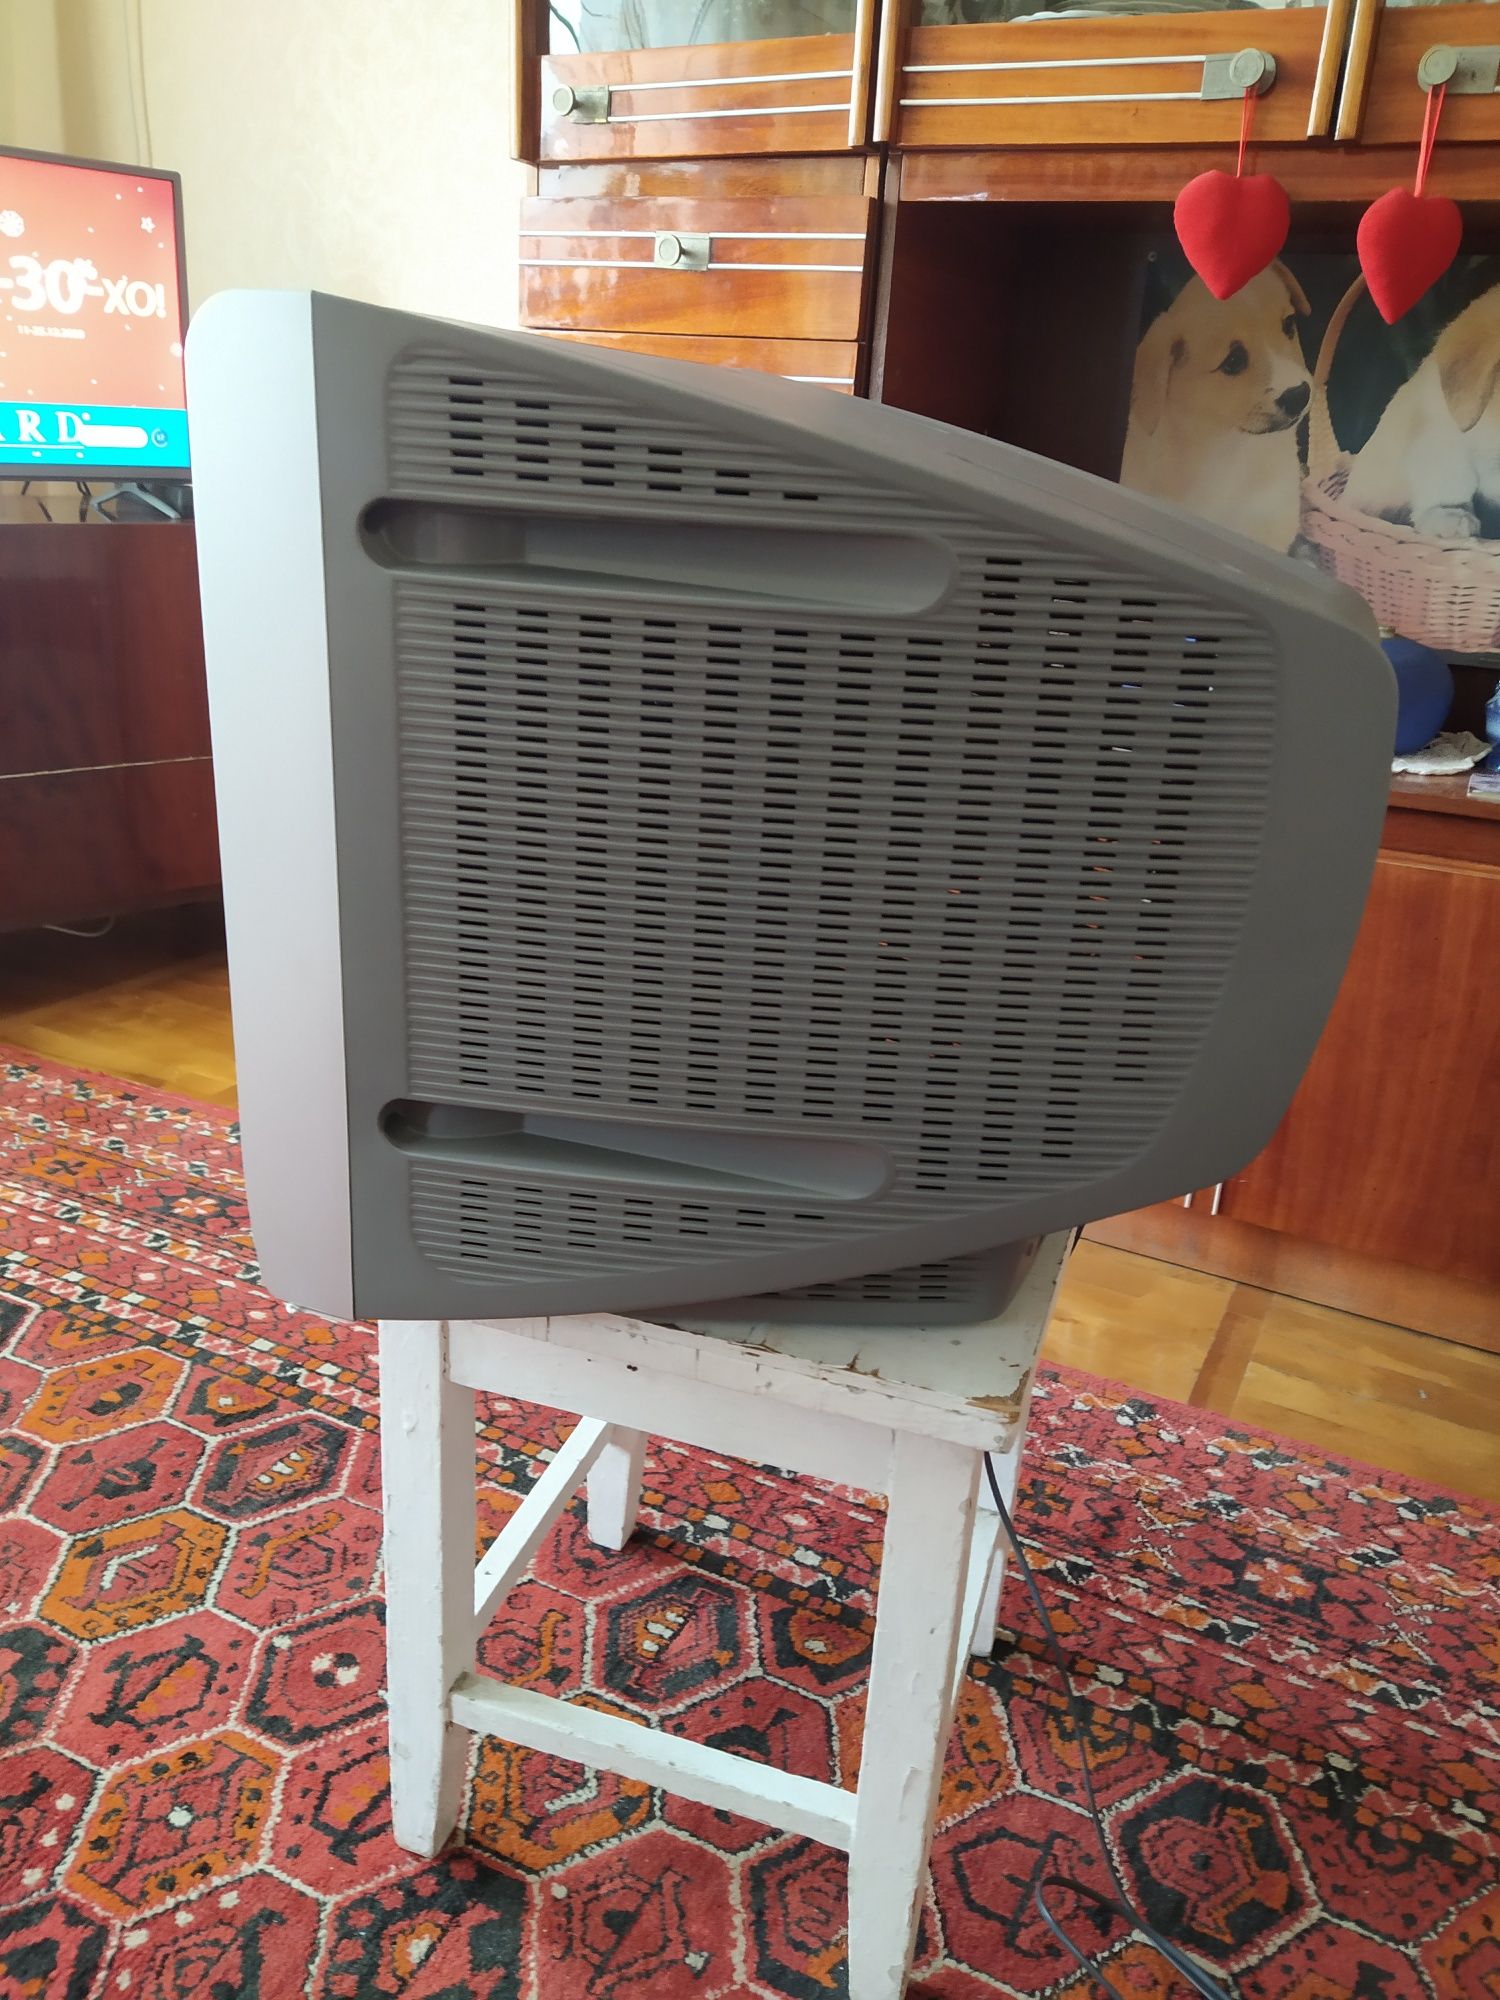 Продам телевизор Sony Wega KV-BZ212M81, Trinitron в отличном состоянии